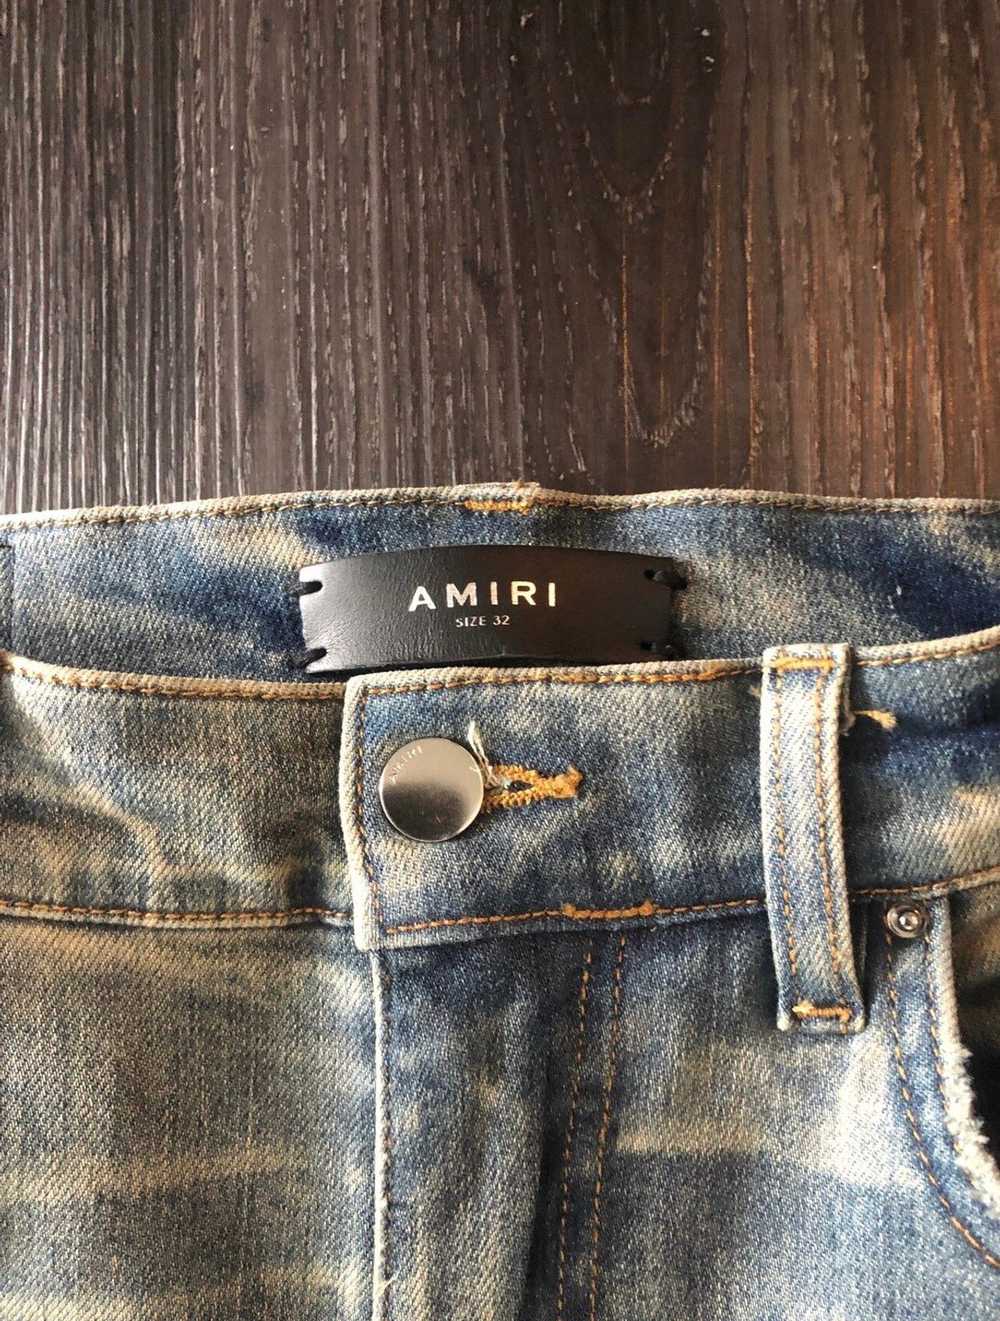 Amiri Amiri Dirty Indigo Bandana MX1 Jeans Size 32 - image 5